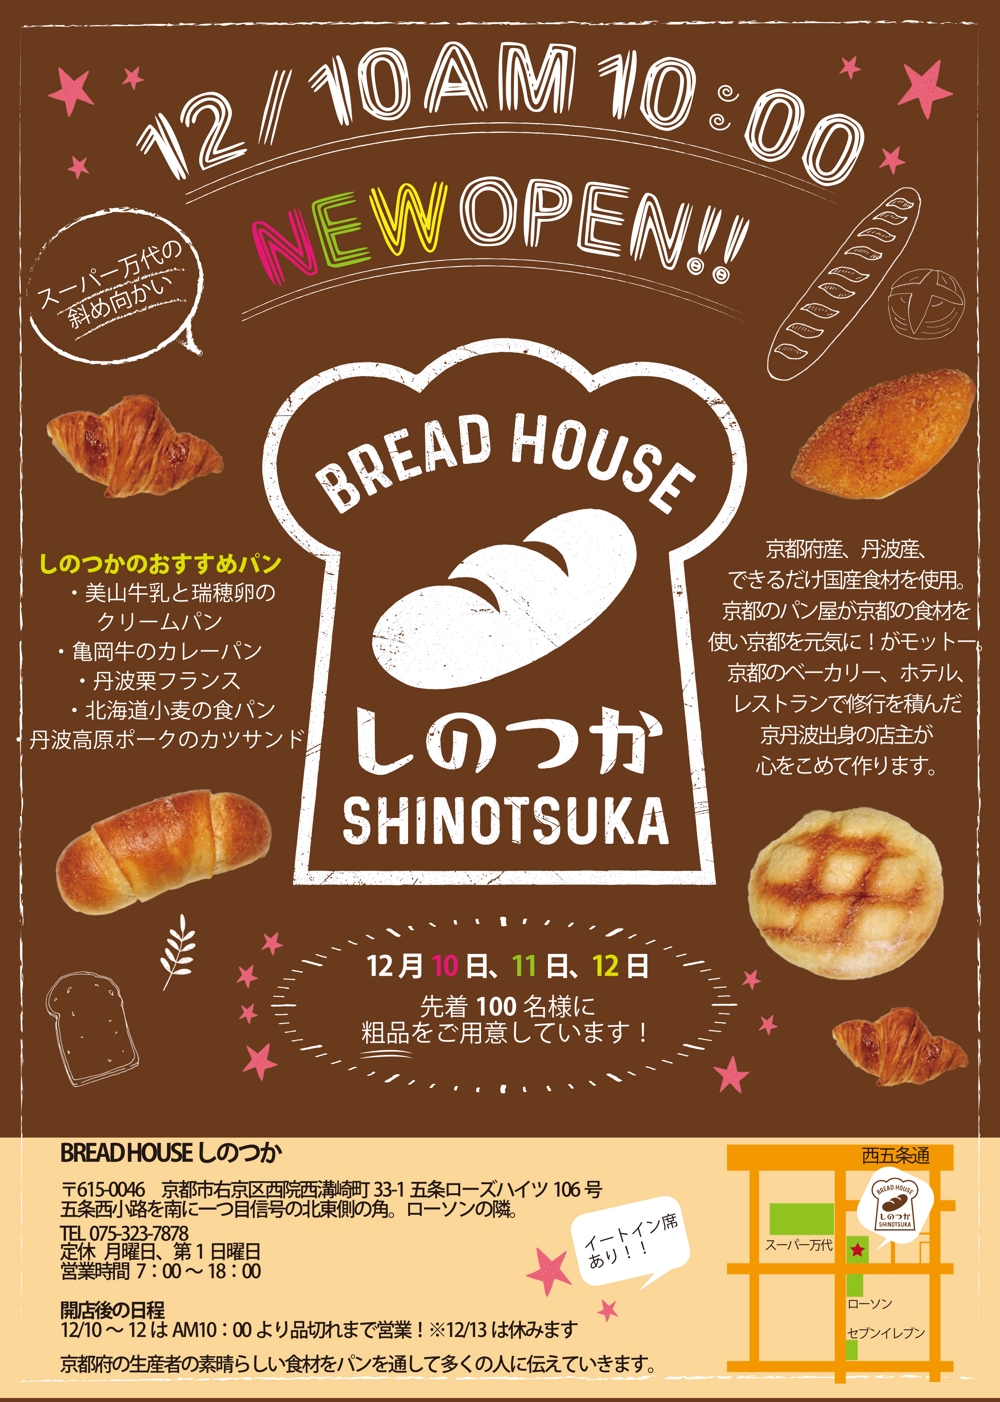 Hoshino027さんの事例 実績 提案 サイズ片面 パン屋breadhouseしのつかのチラシ こんにちは 折り込み クラウドソーシング ランサーズ